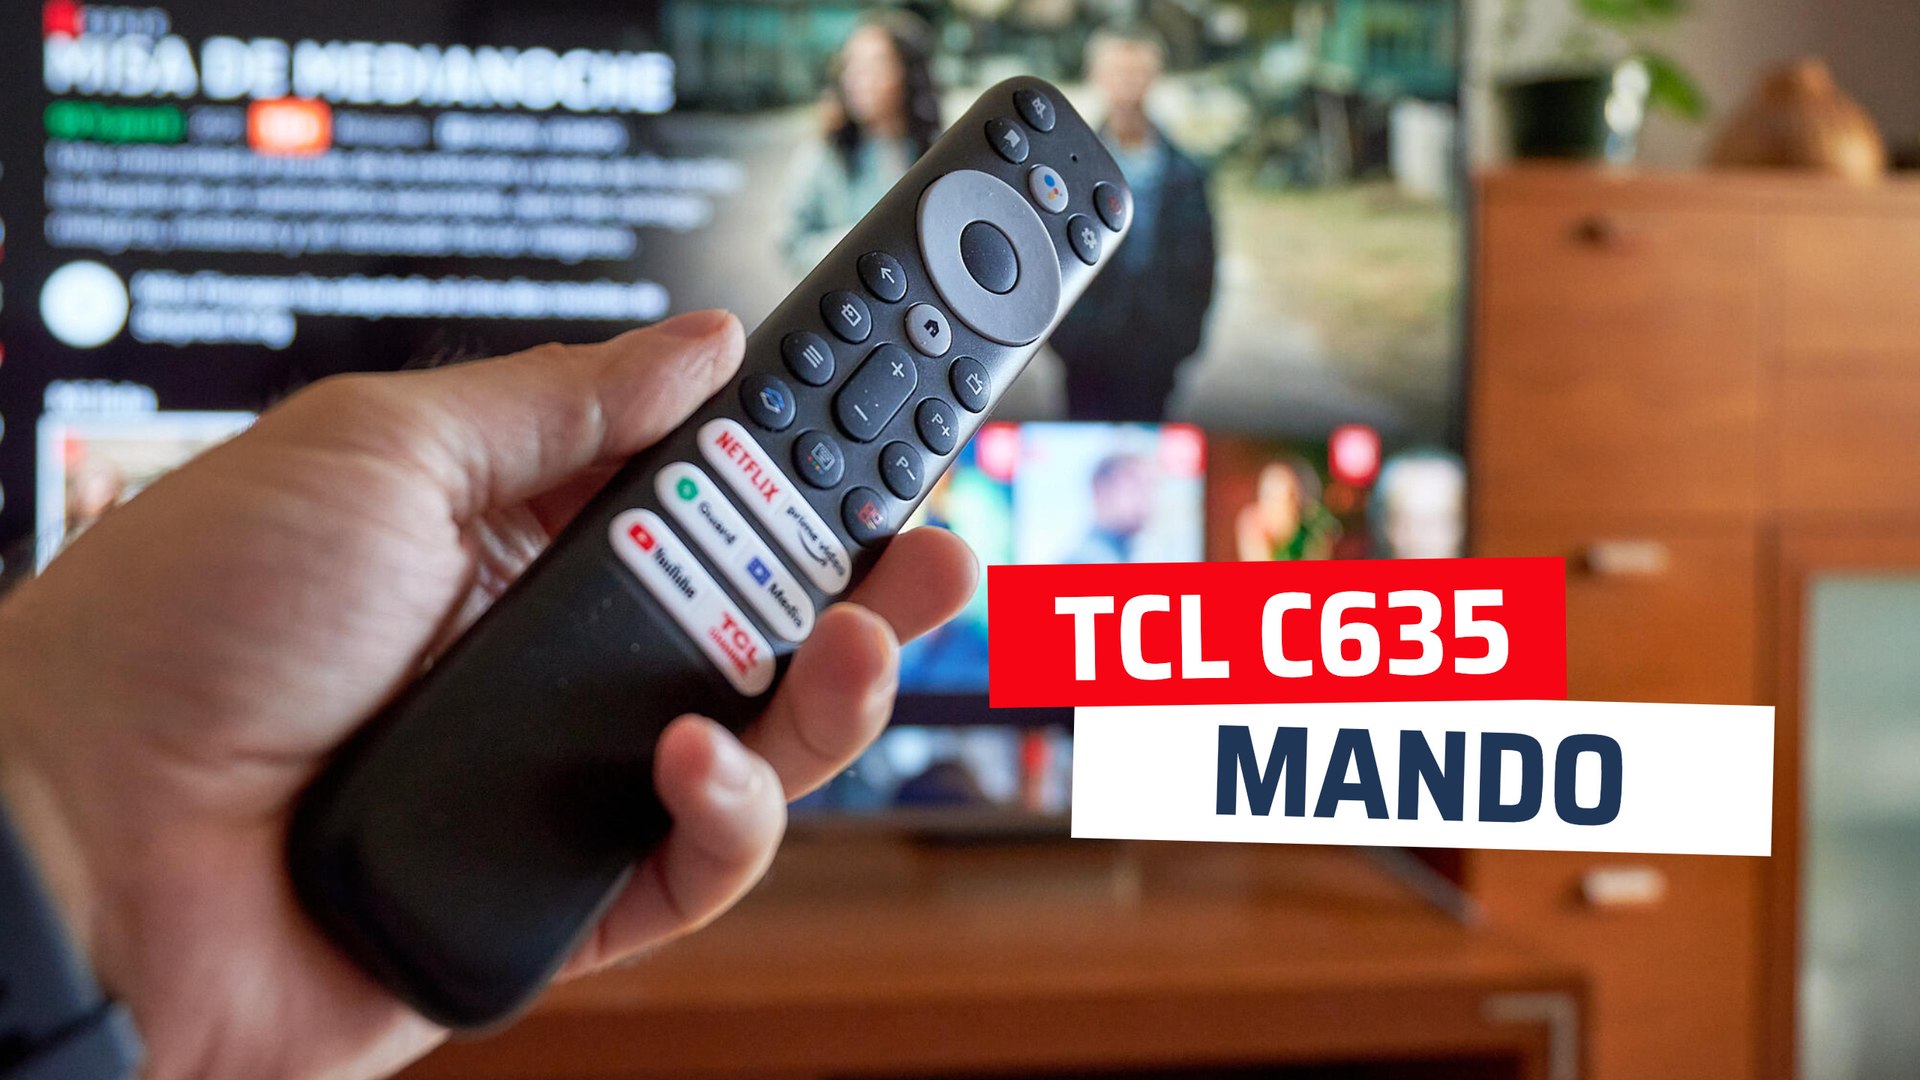 Mando a distancia del TCL C635 - Vídeo Dailymotion